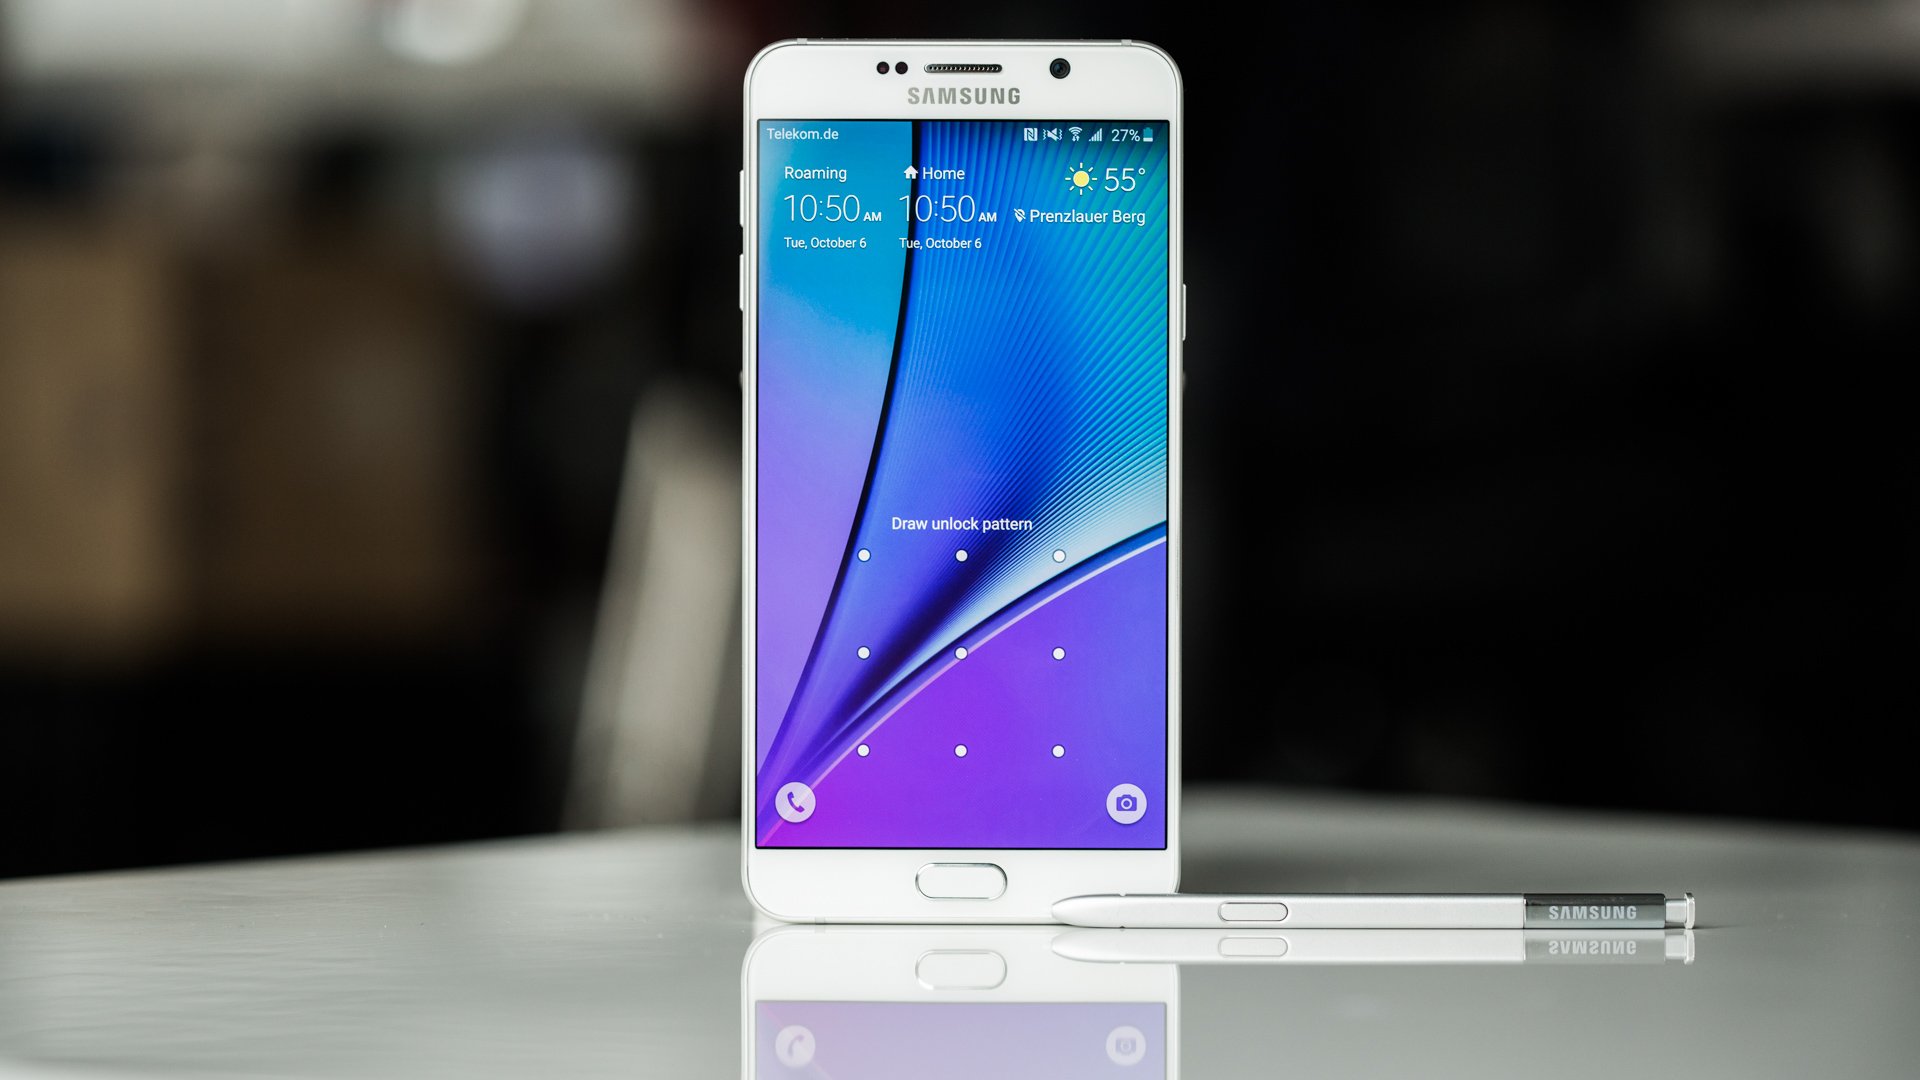 Samsung ترسل تحديث لهواتف Galaxy Note 4 لتحسين عمر البطارية